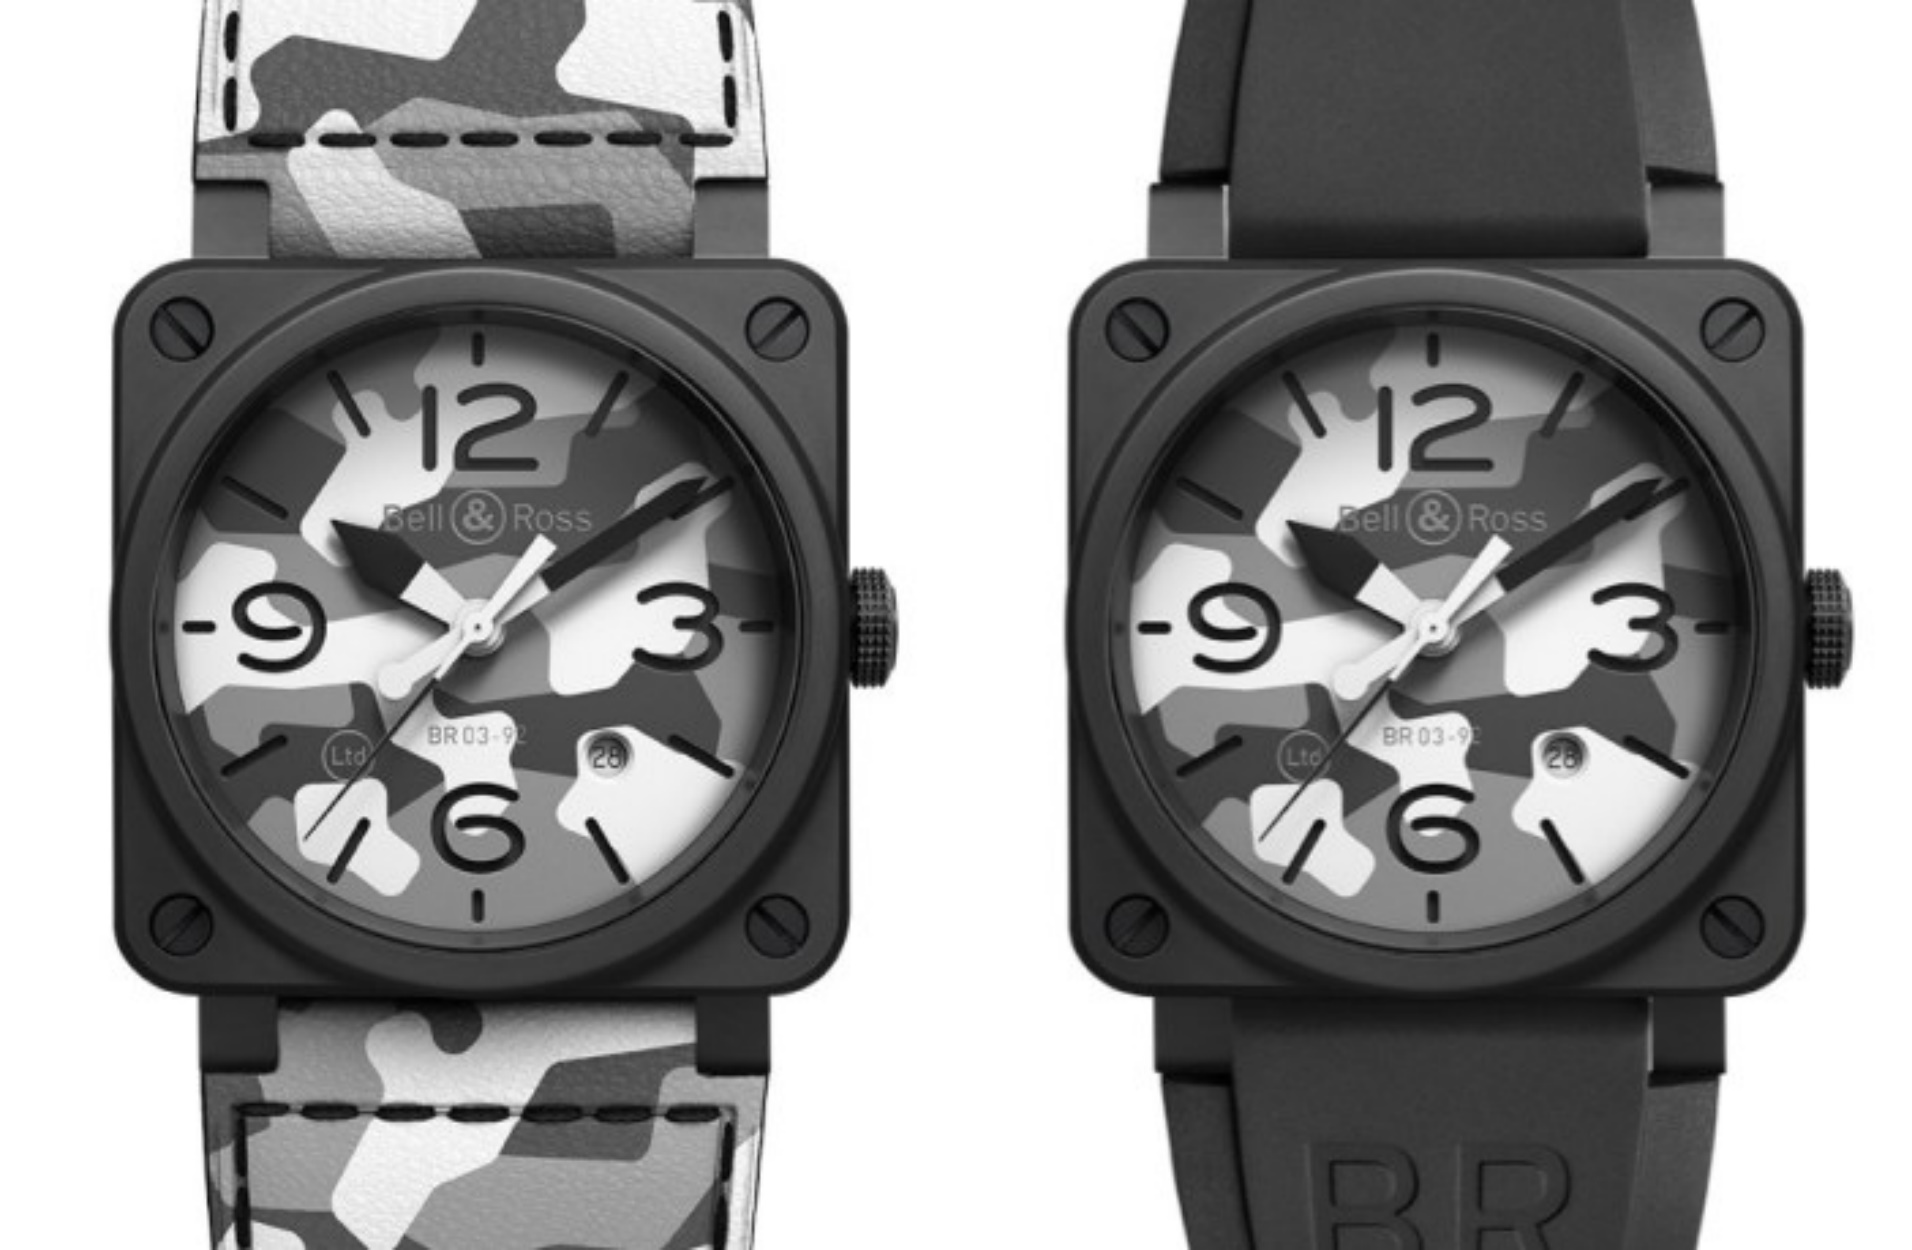 Το νέο ρολόι της Bell & Ross παίρνει έμπνευση από τις ειδικές δυνάμεις